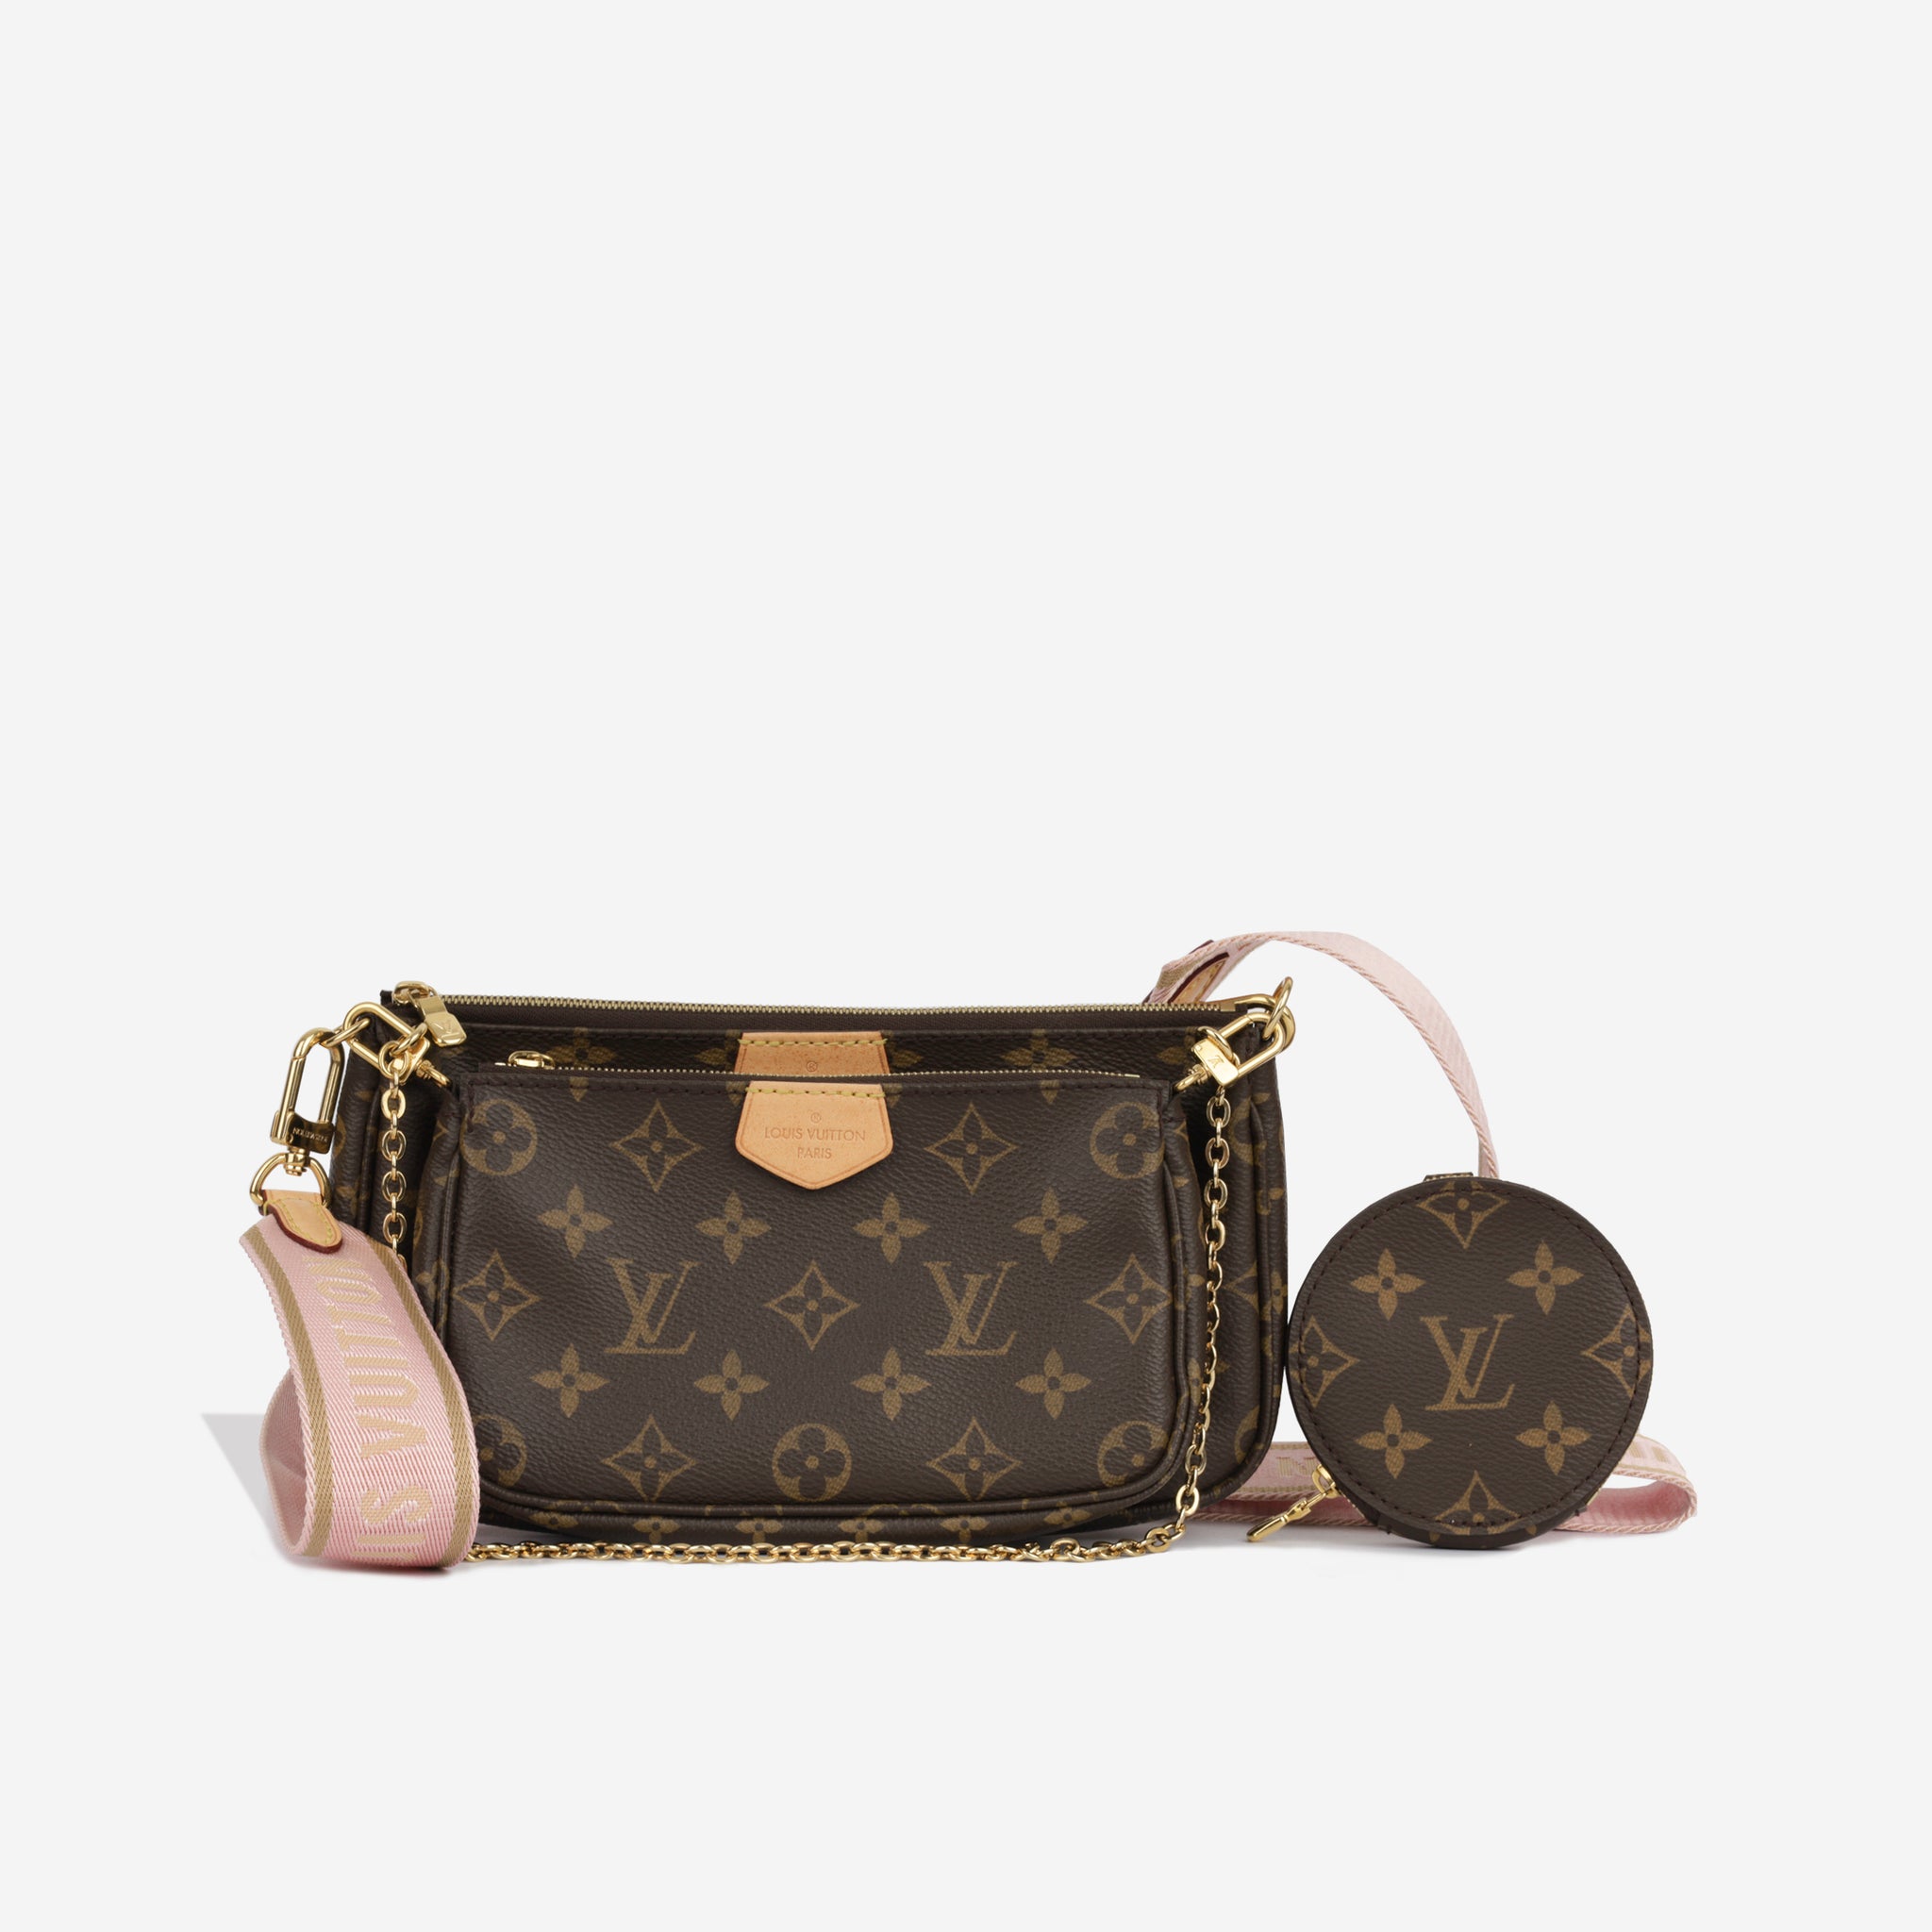 Louis Vuitton - Multi Pochette Accessoires - Pink Strap - Pre Loved